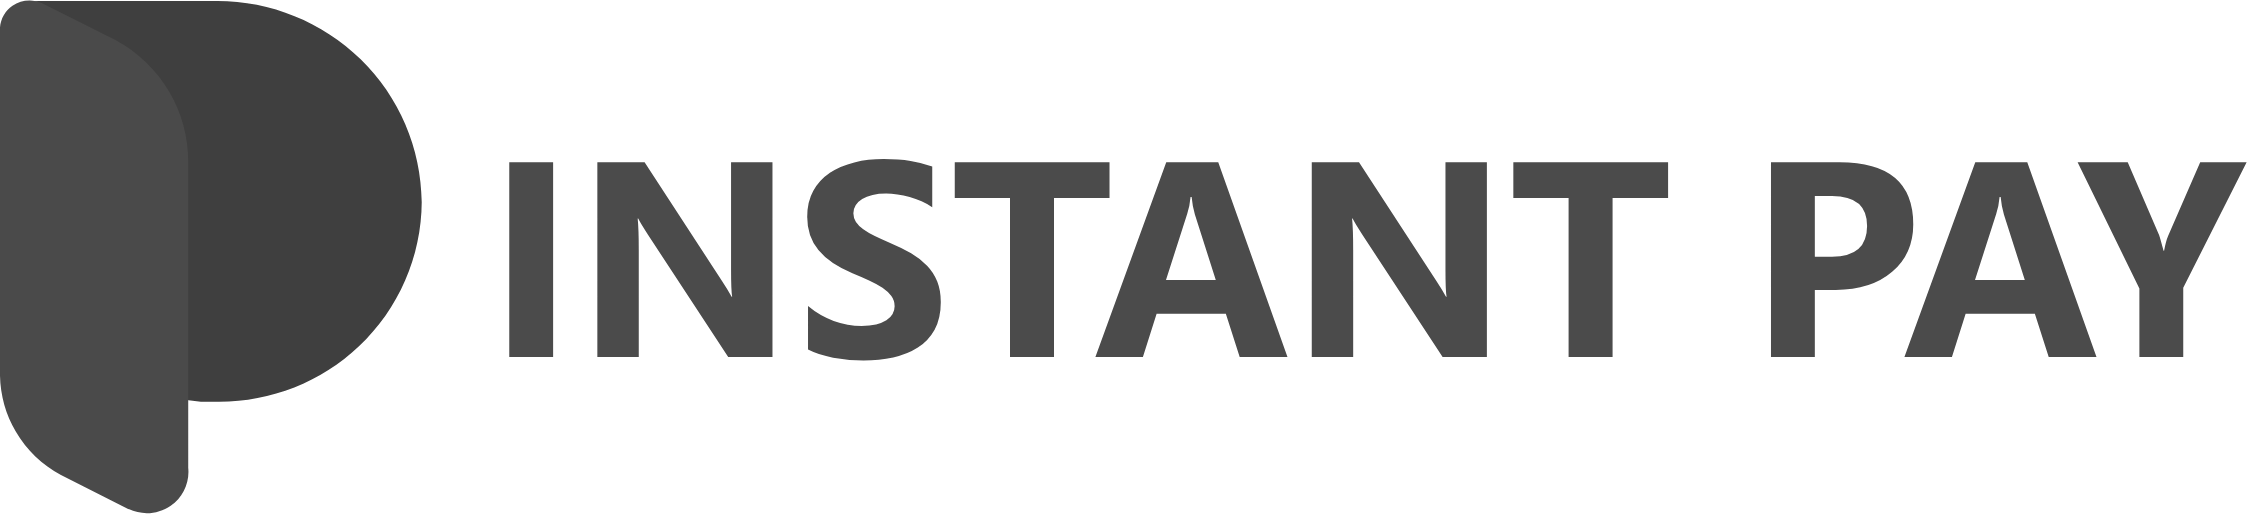 instantPay logo